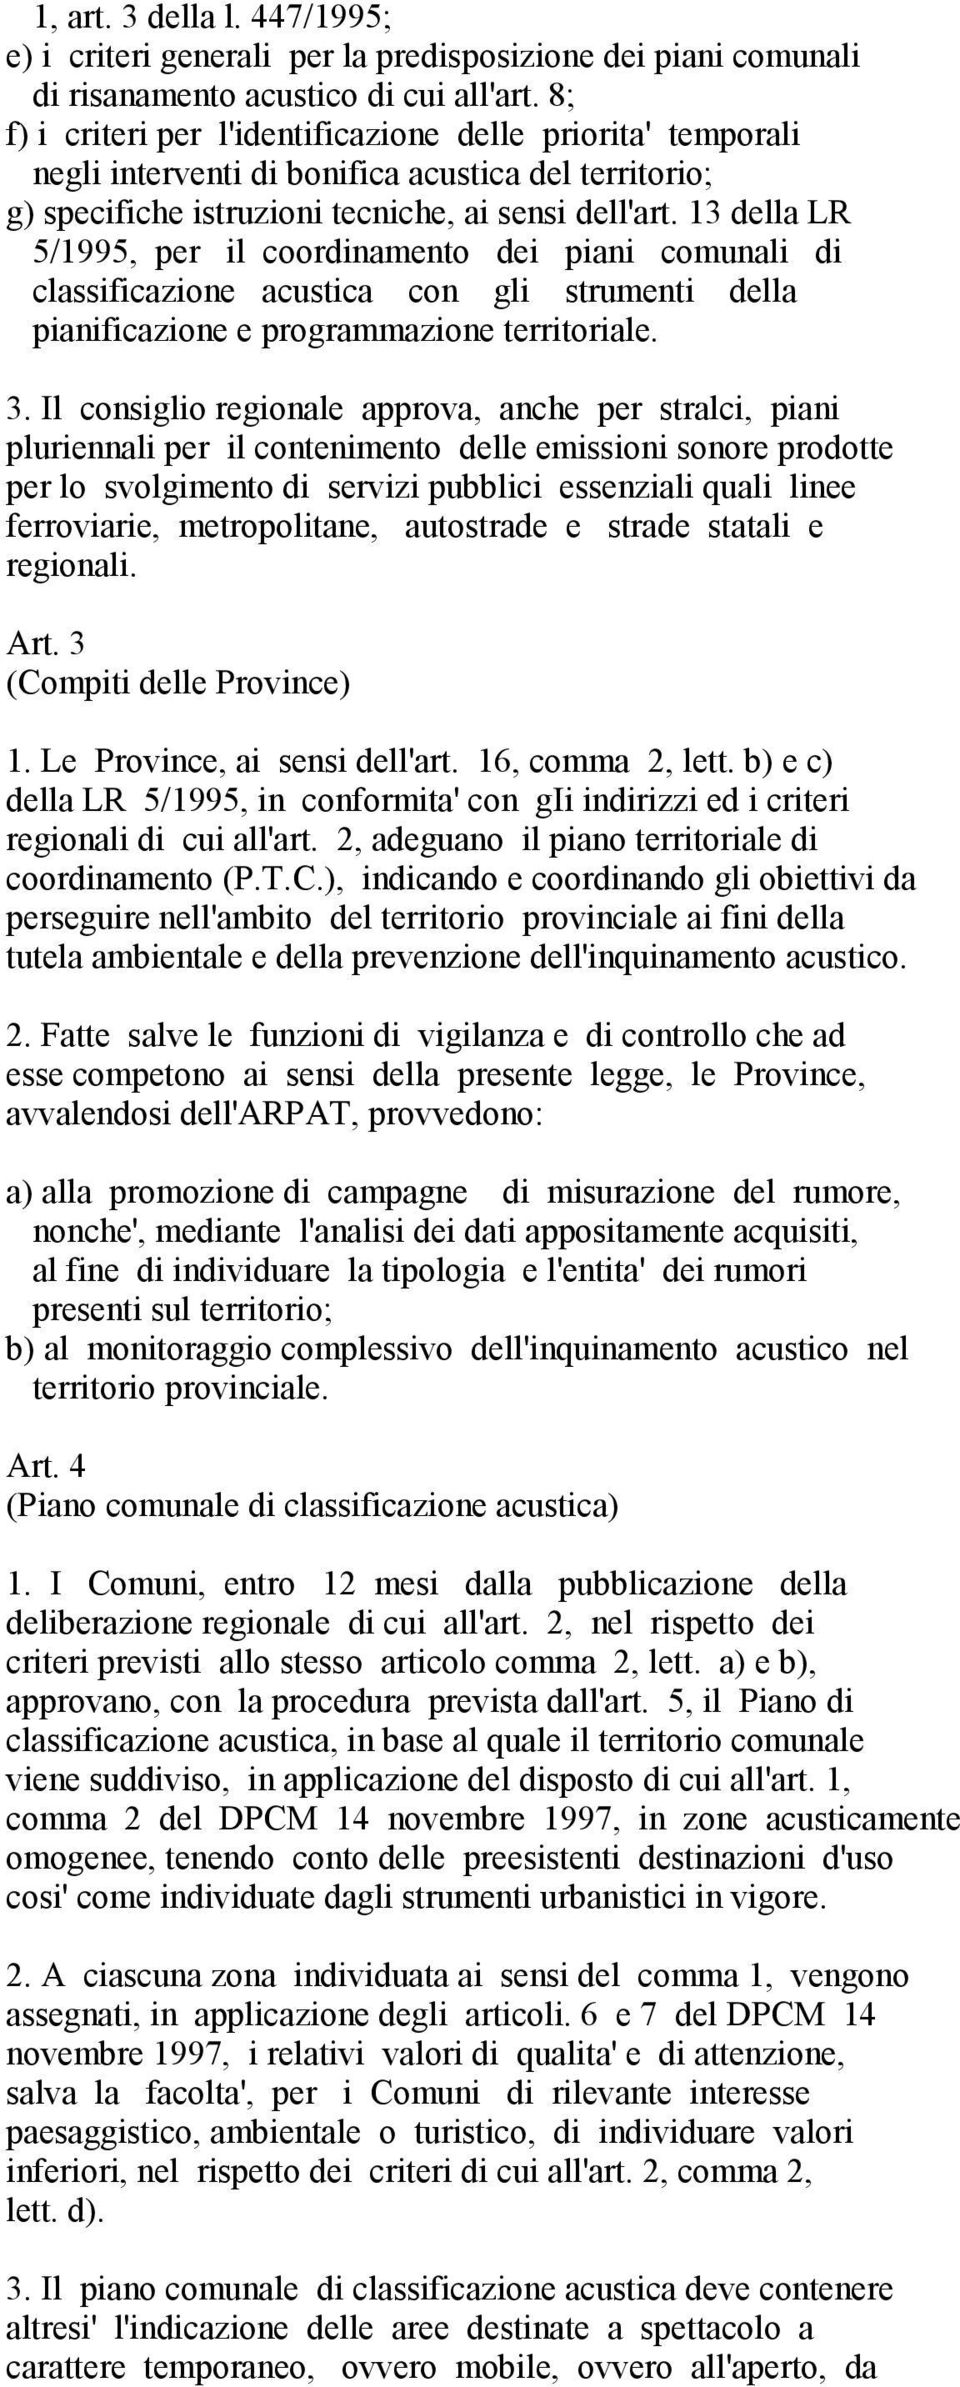 13 della LR 5/1995, per il coordinamento dei piani comunali di classificazione acustica con gli strumenti della pianificazione e programmazione territoriale. 3.